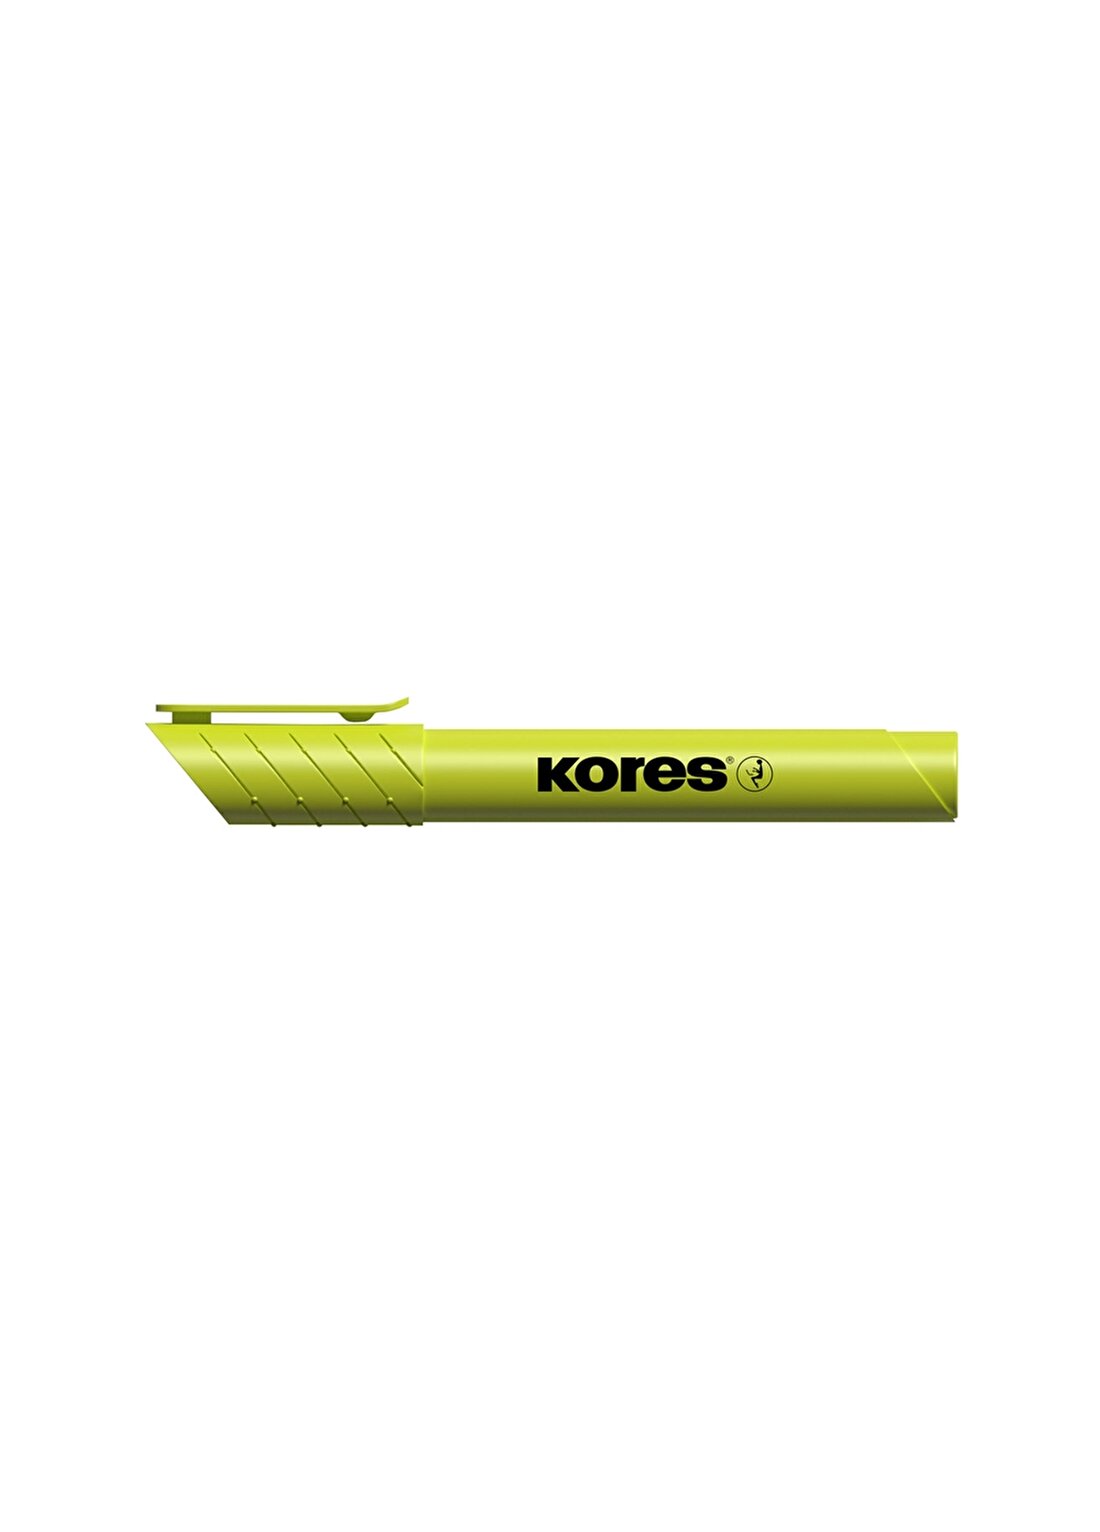 Kores Sarı Kalem S Fosforlu Kalem - Sarı